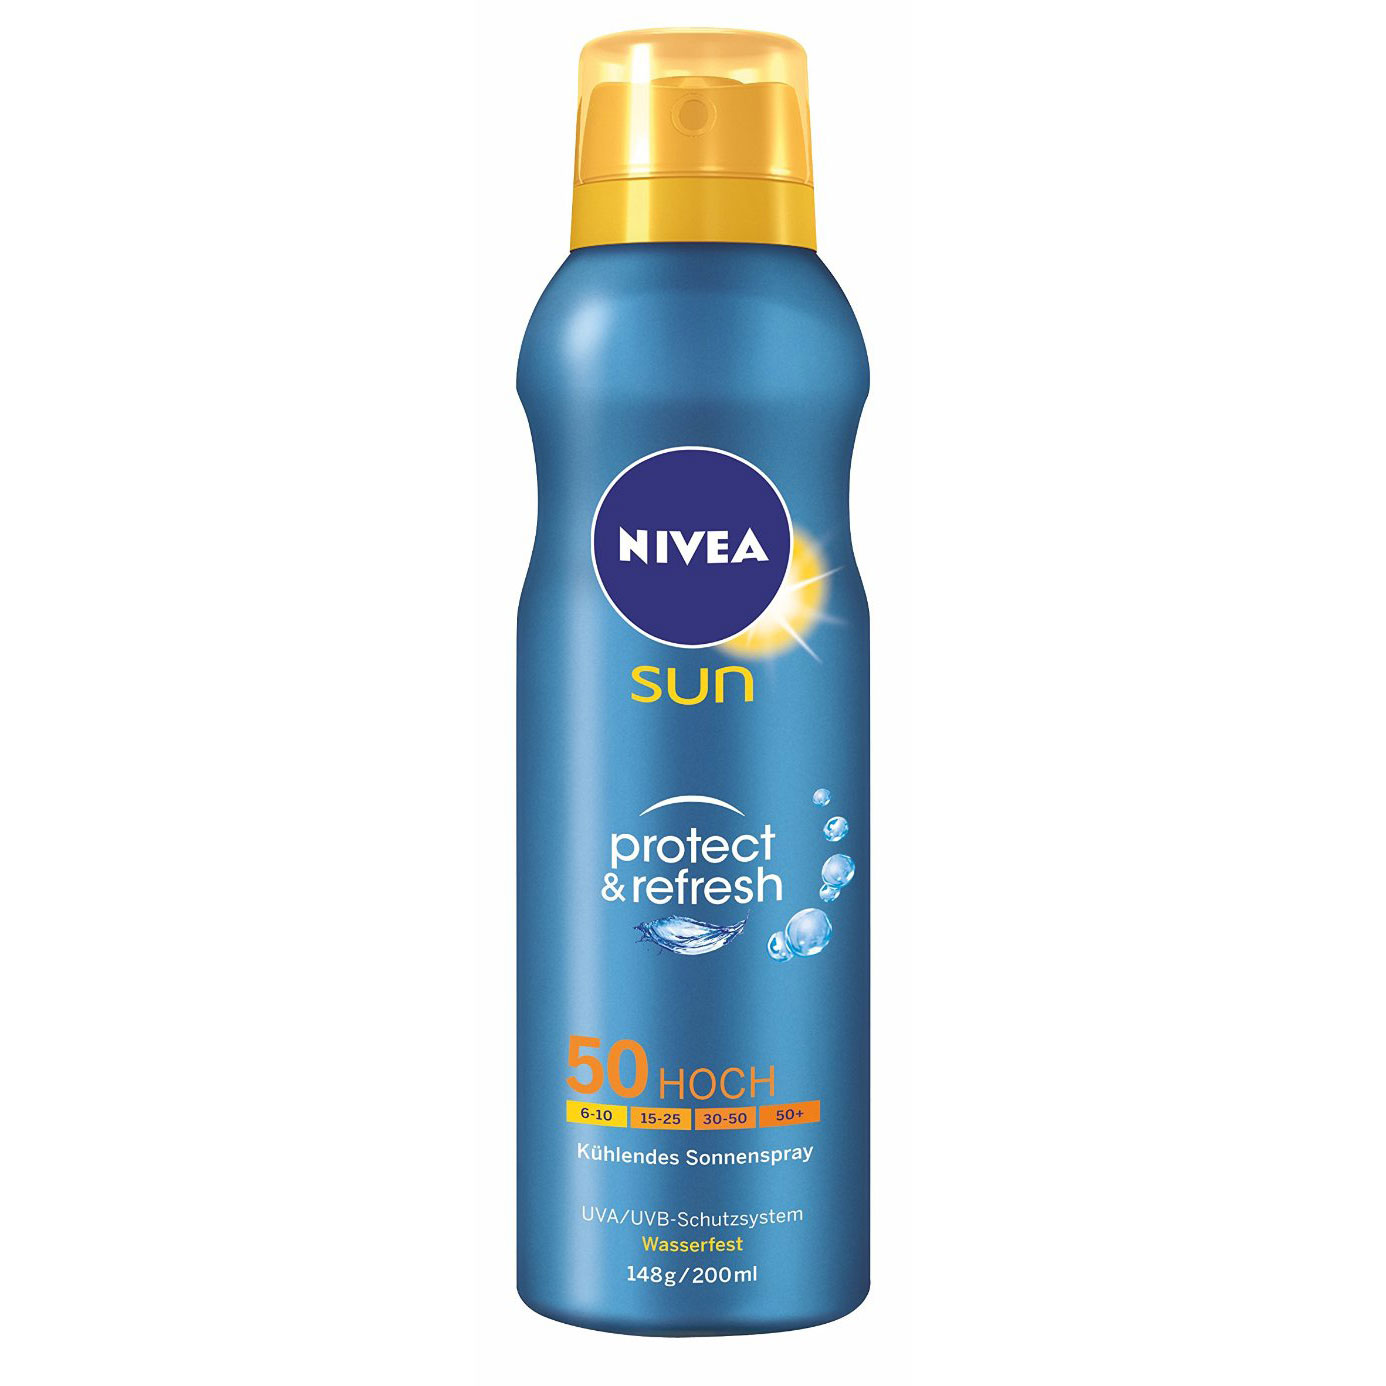 Nivea sun protect refresh sonnenspray